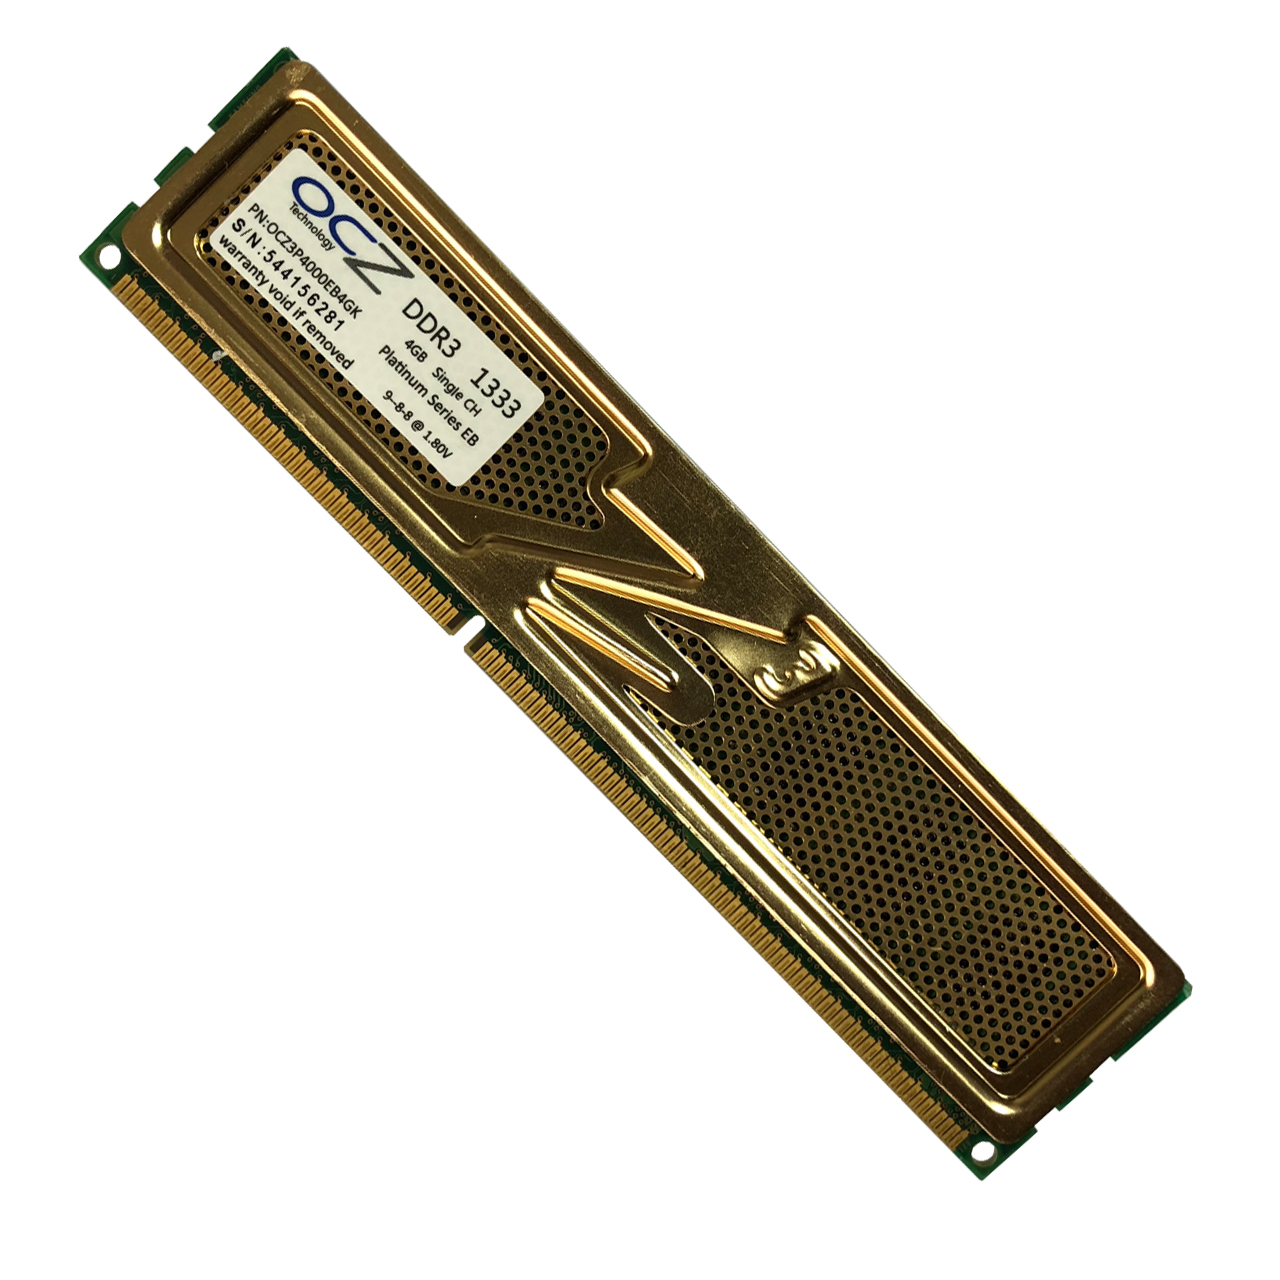 رم دسکتاپ DDR3 تک کاناله ۱۳۳۳ مگاهرتز CL9 او سی زد مدل platinum ظرفیت 4 گیگابایت